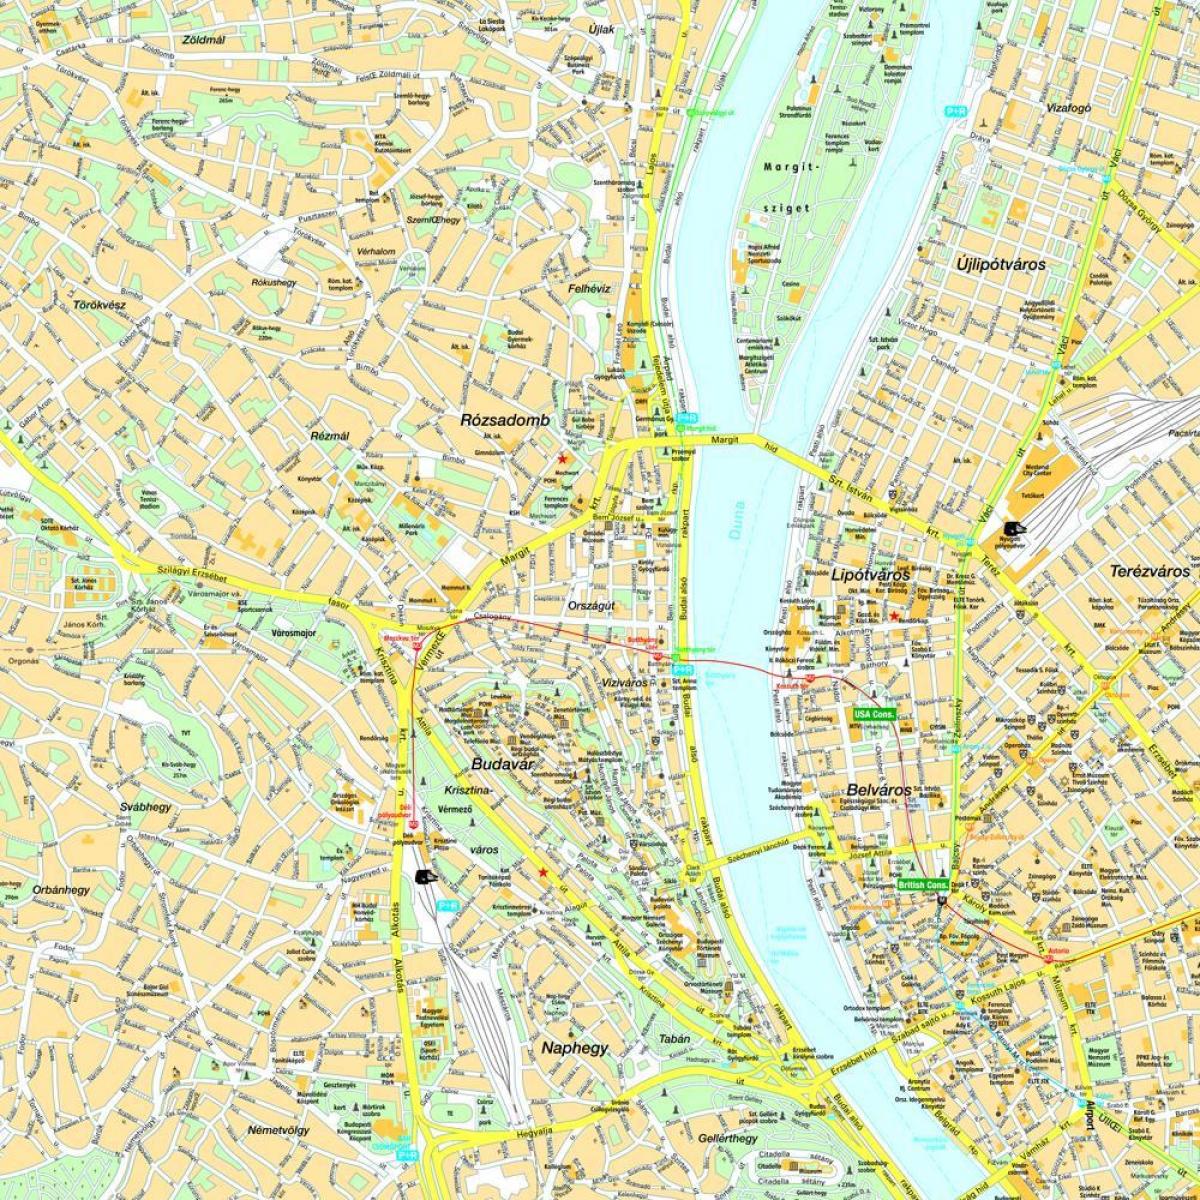 peta kota budapest dan sekitarnya